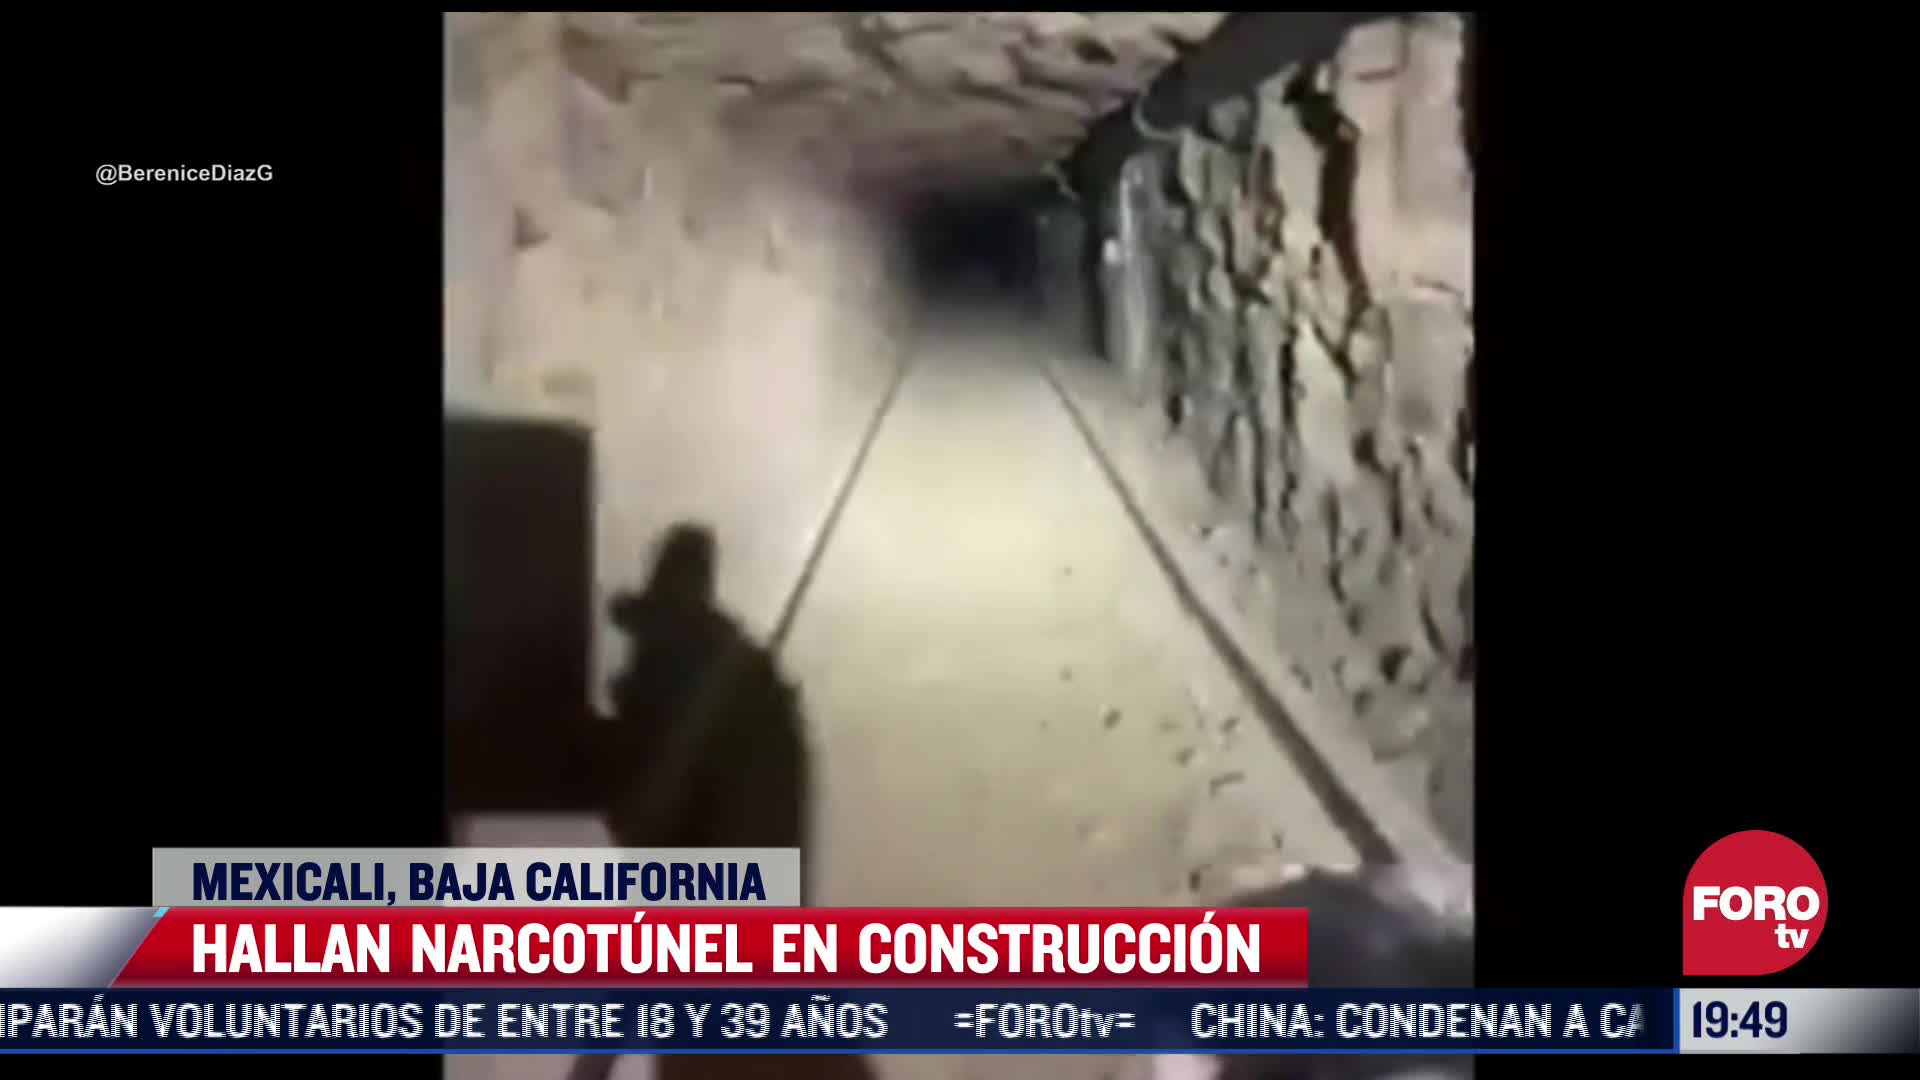 Hallan narcotúnel en construcción en Mexicali, Baja California